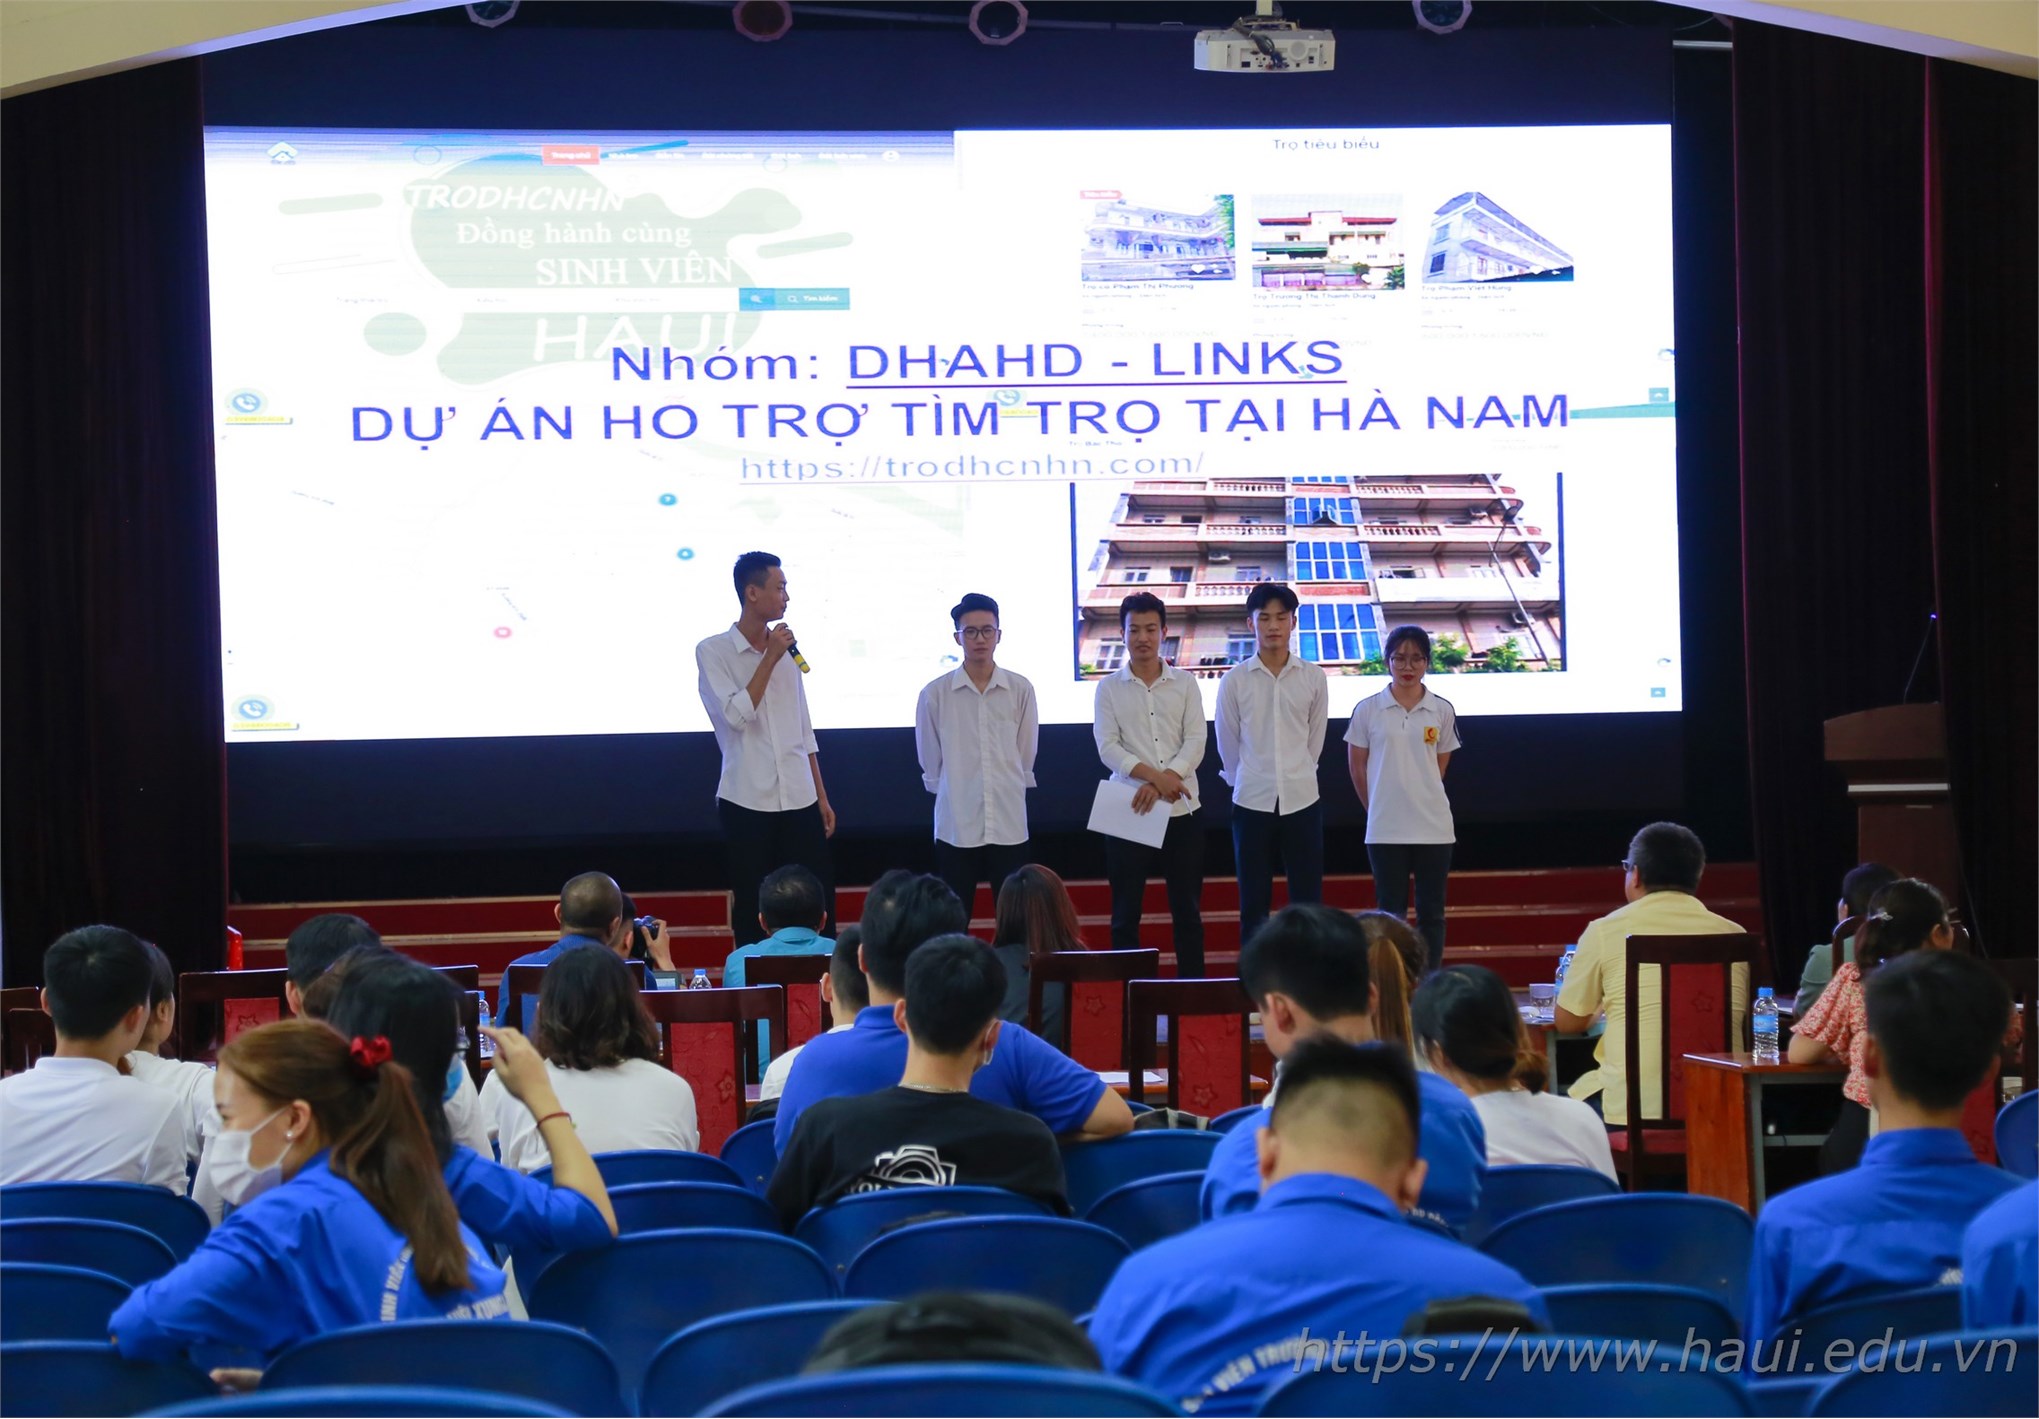 Đào tạo “Tư duy đổi mới sáng tạo và khởi nghiệp” cho sinh viên Đại học Công nghiệp Hà Nội